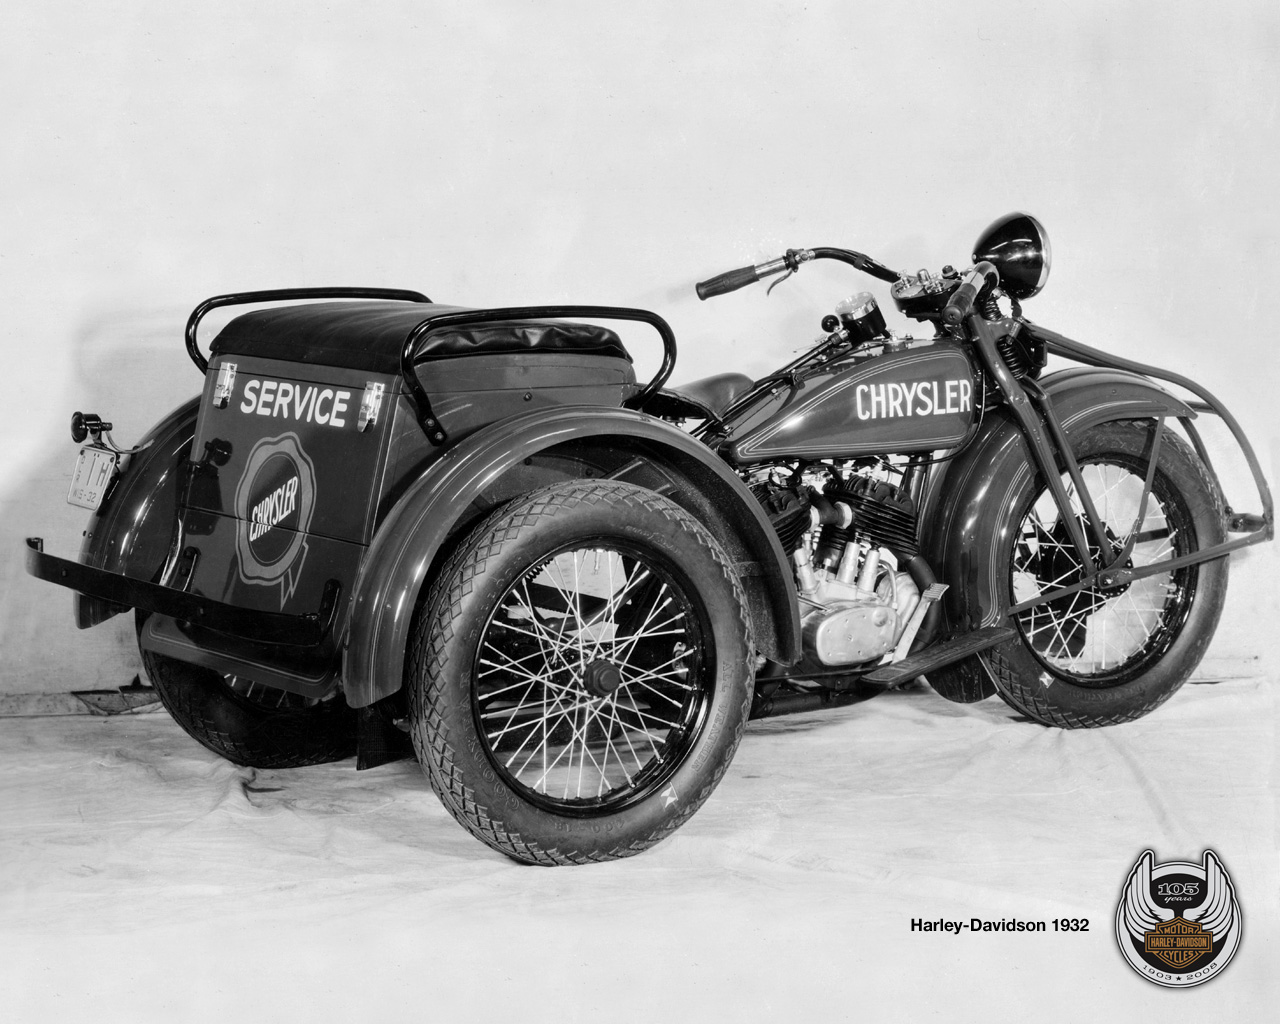 1932 - Harley-Davidson modelo Servicar